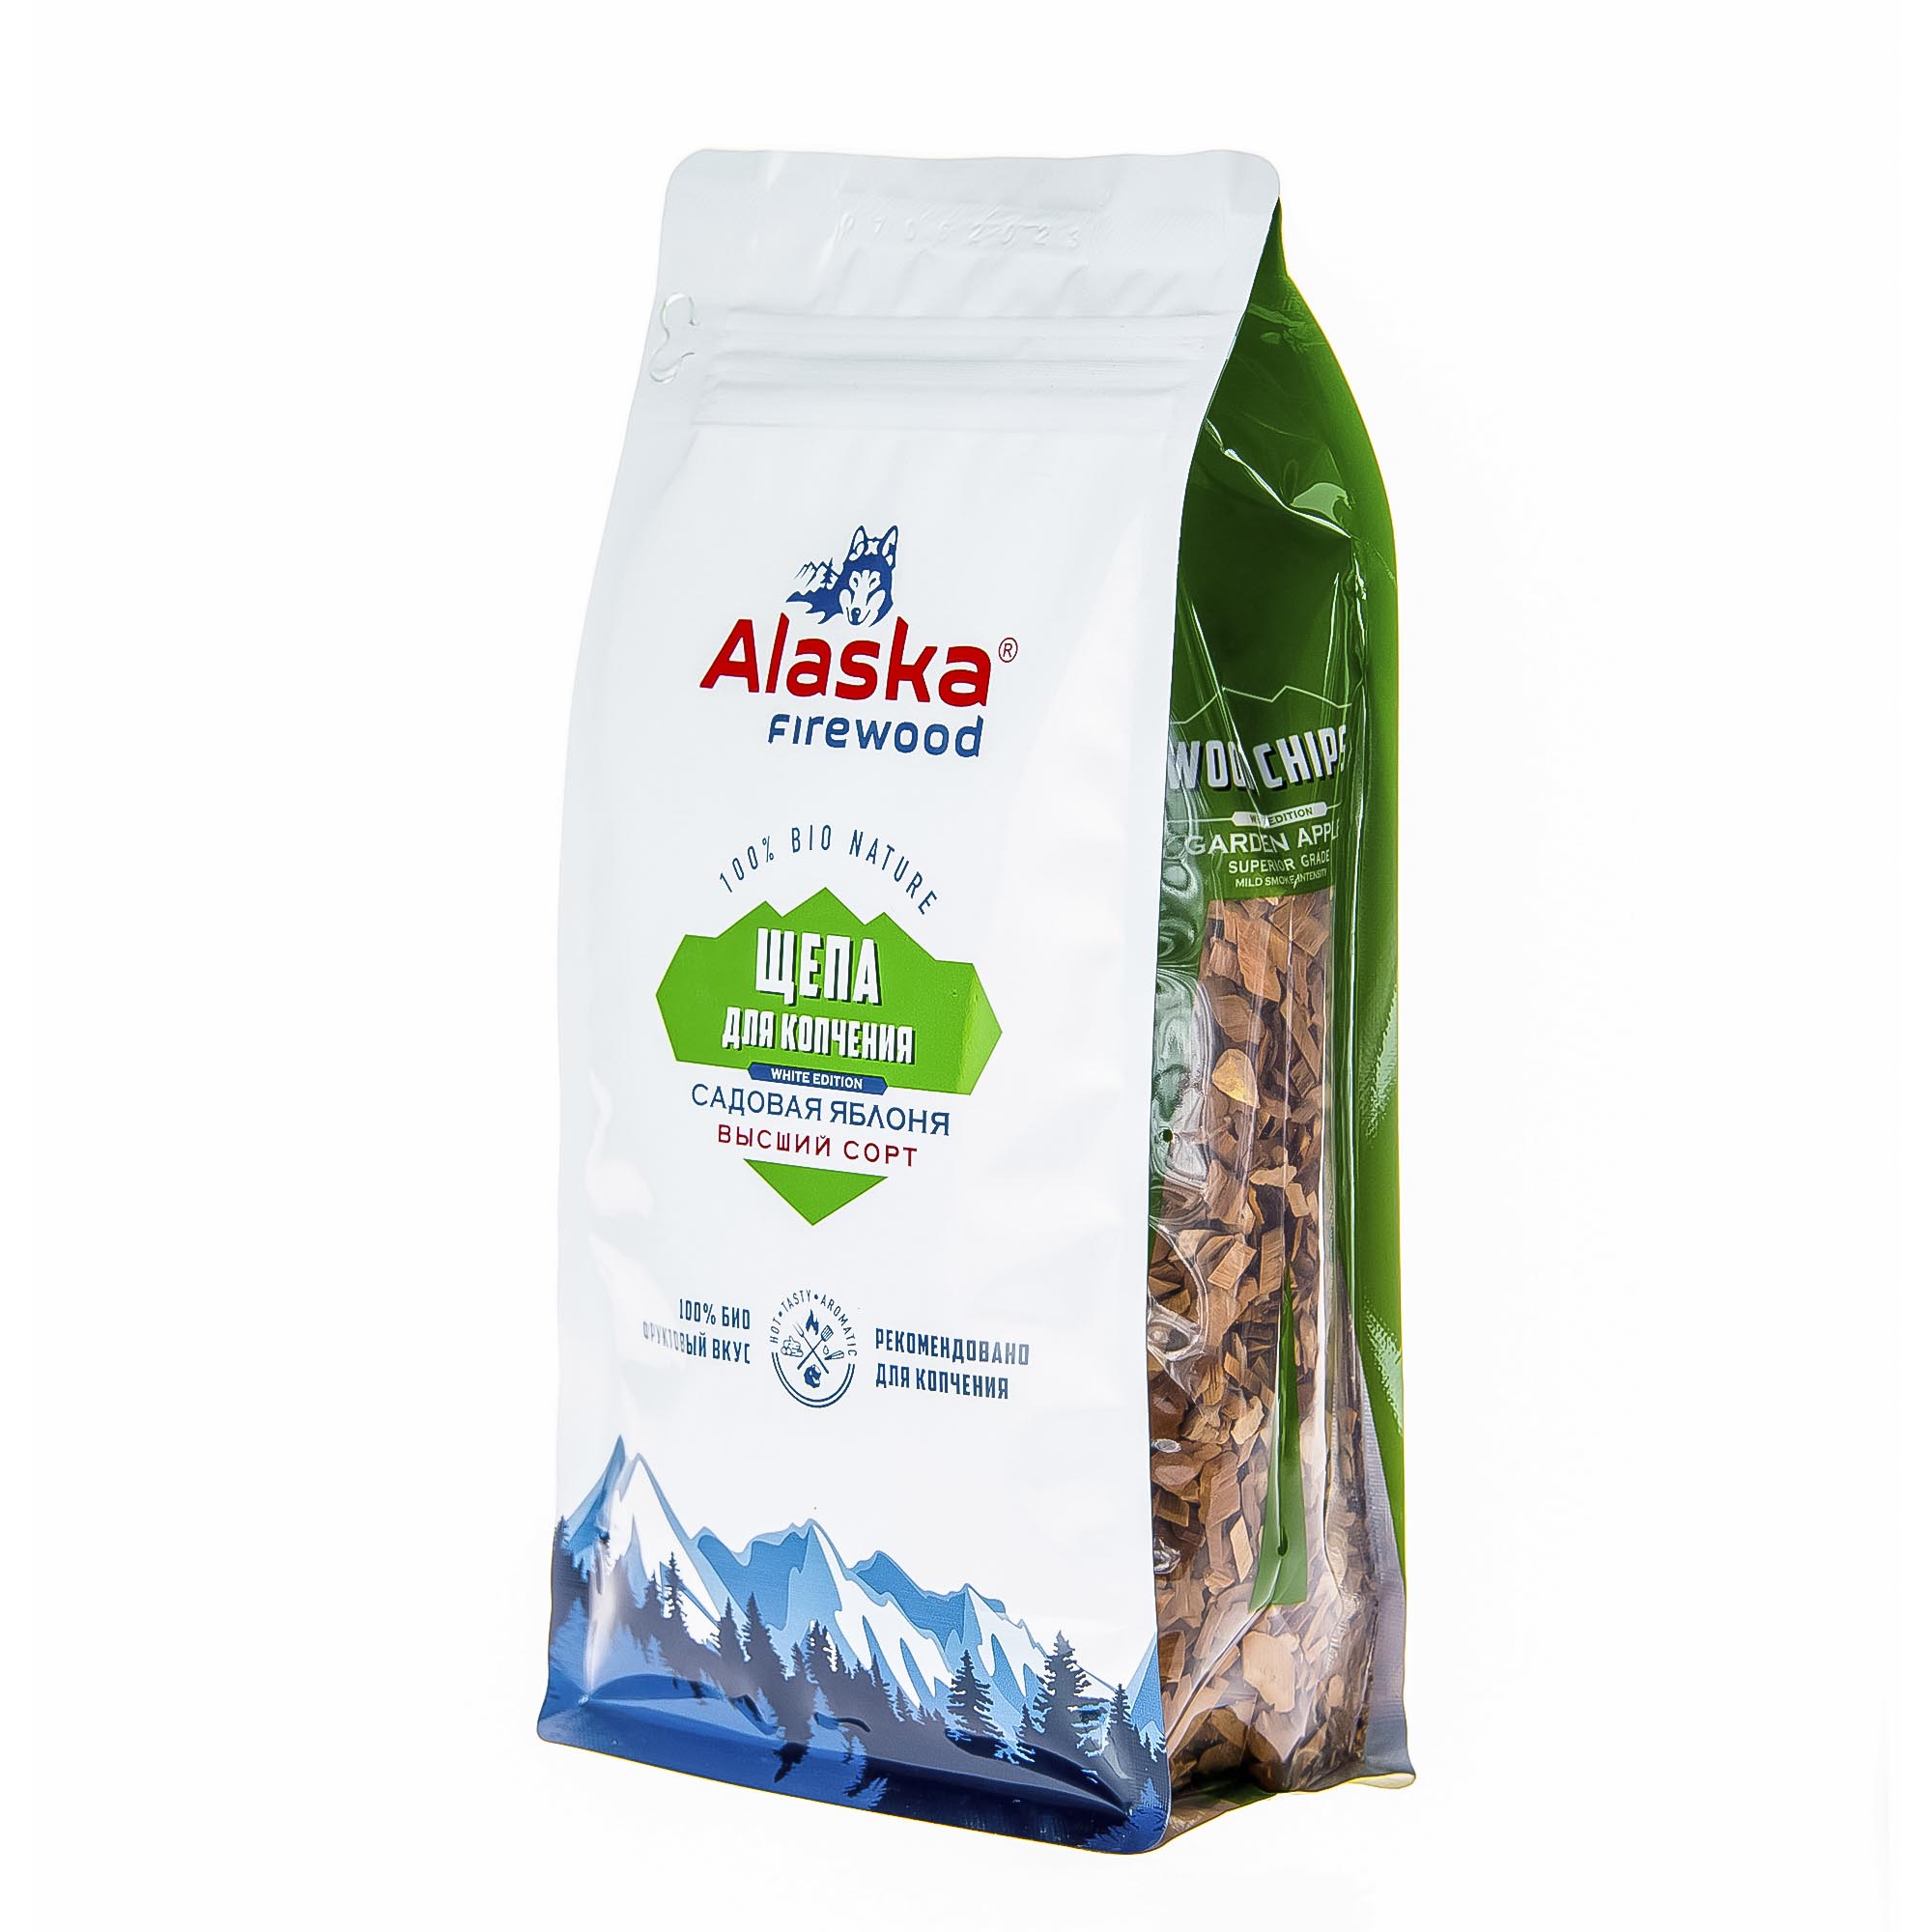 Щепа для копчения Alaska firewood яблоко 300 г щепа для копчения для рыбы торфтехнолин